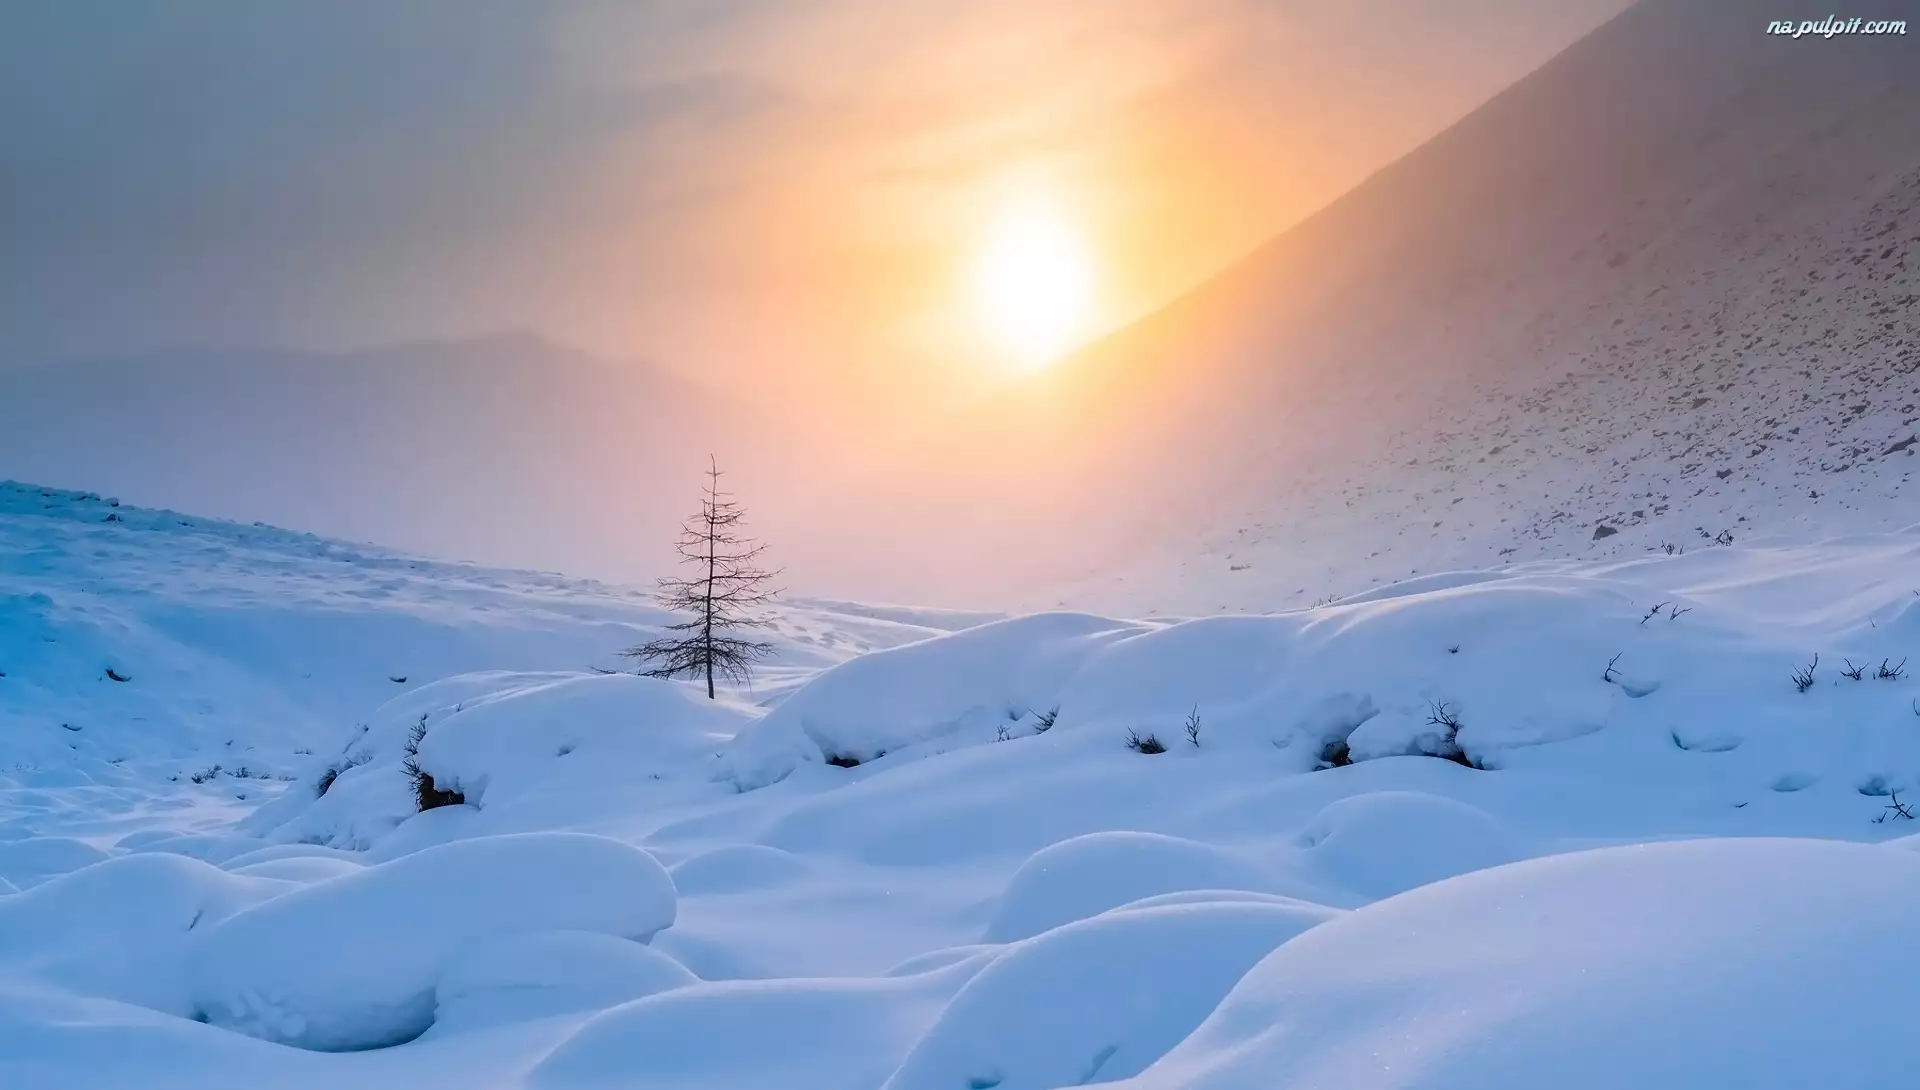 Śnieg, Zima, Mgła, Wschód słońca, Góry, Drzewo